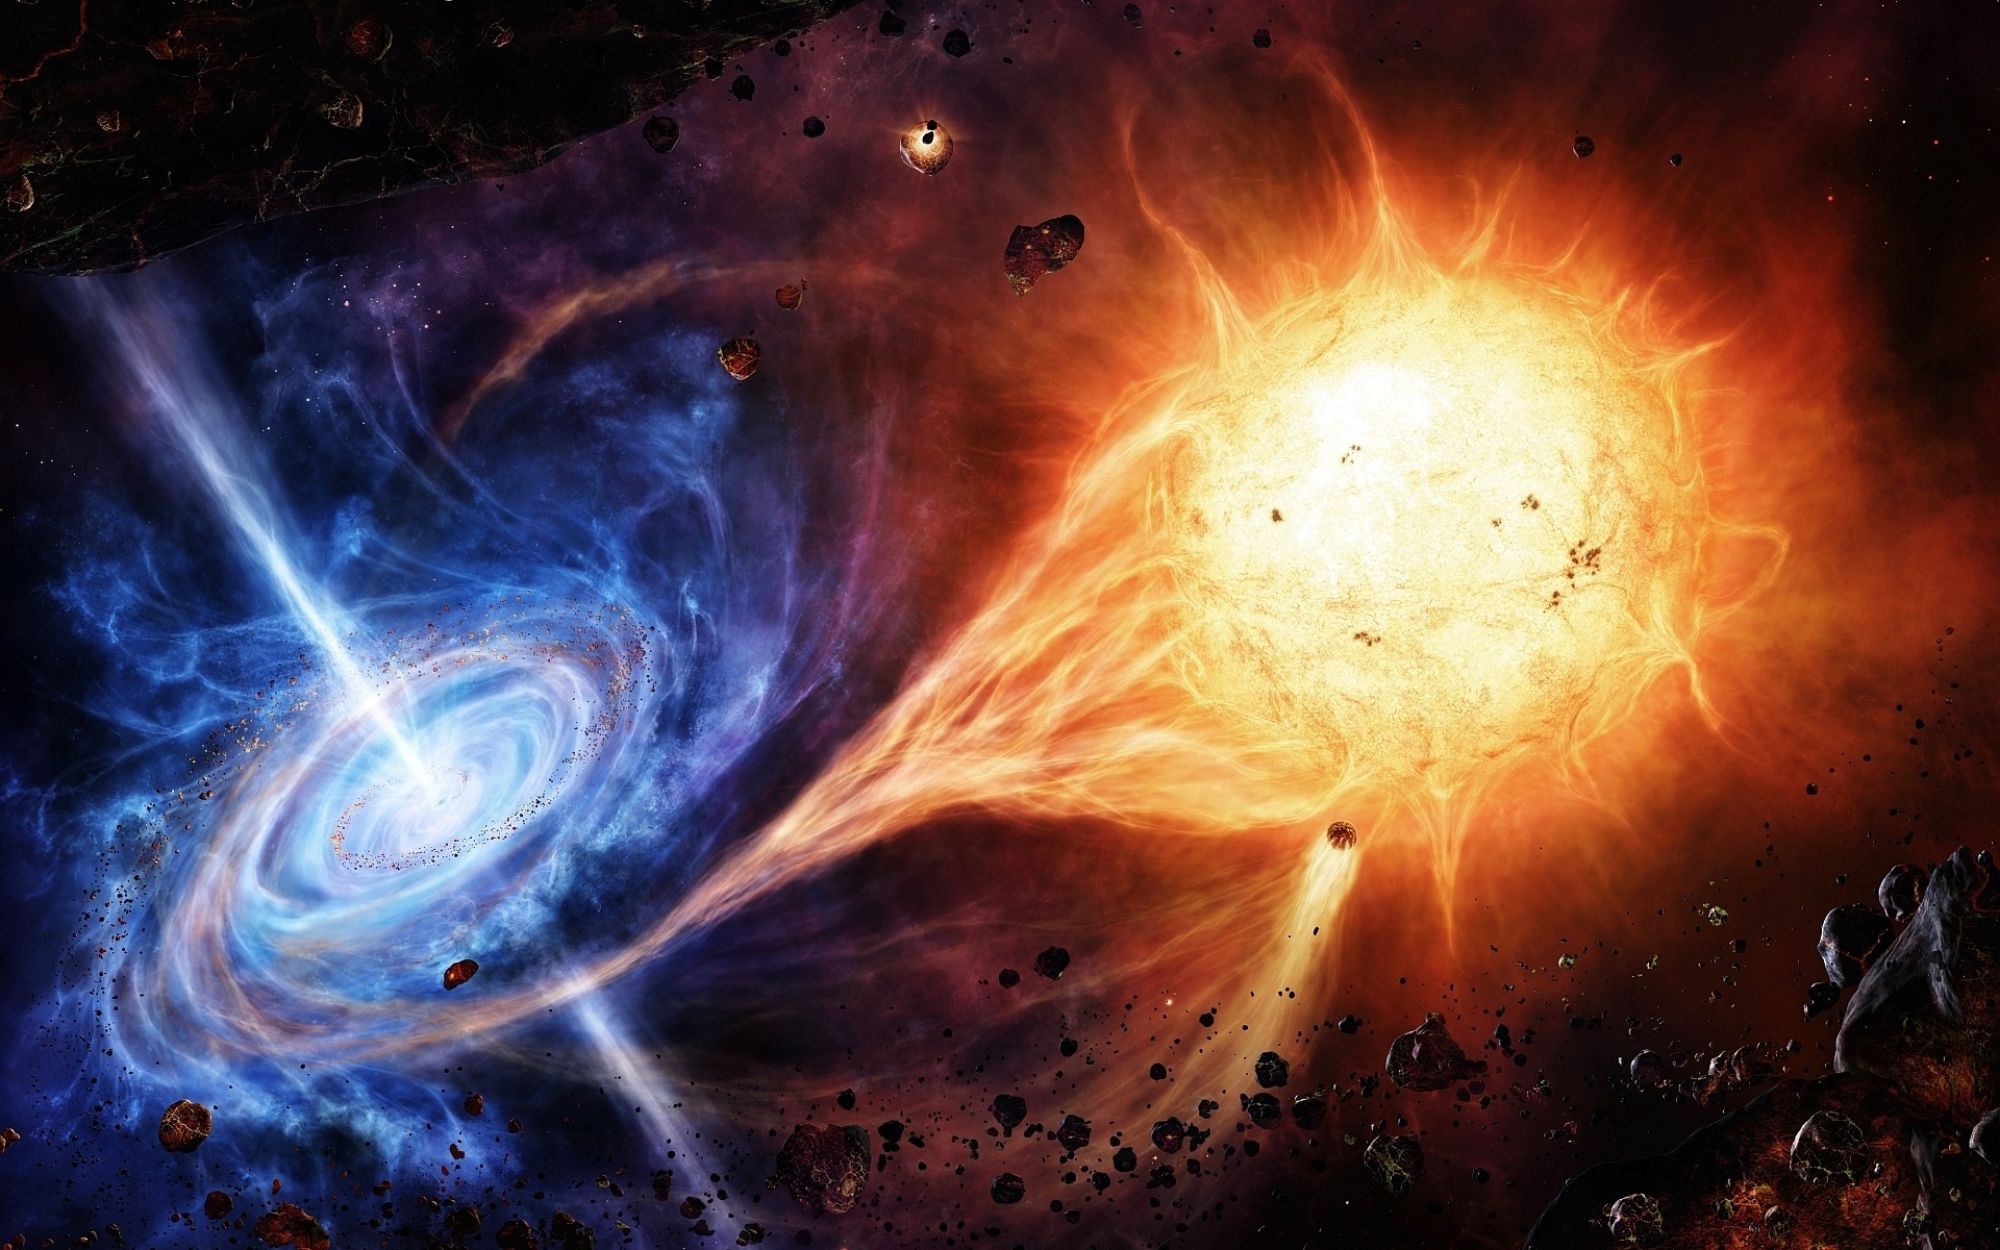 Обои Спиральные галактики картинки на рабочий стол на тему Космос - скачать бесплатно